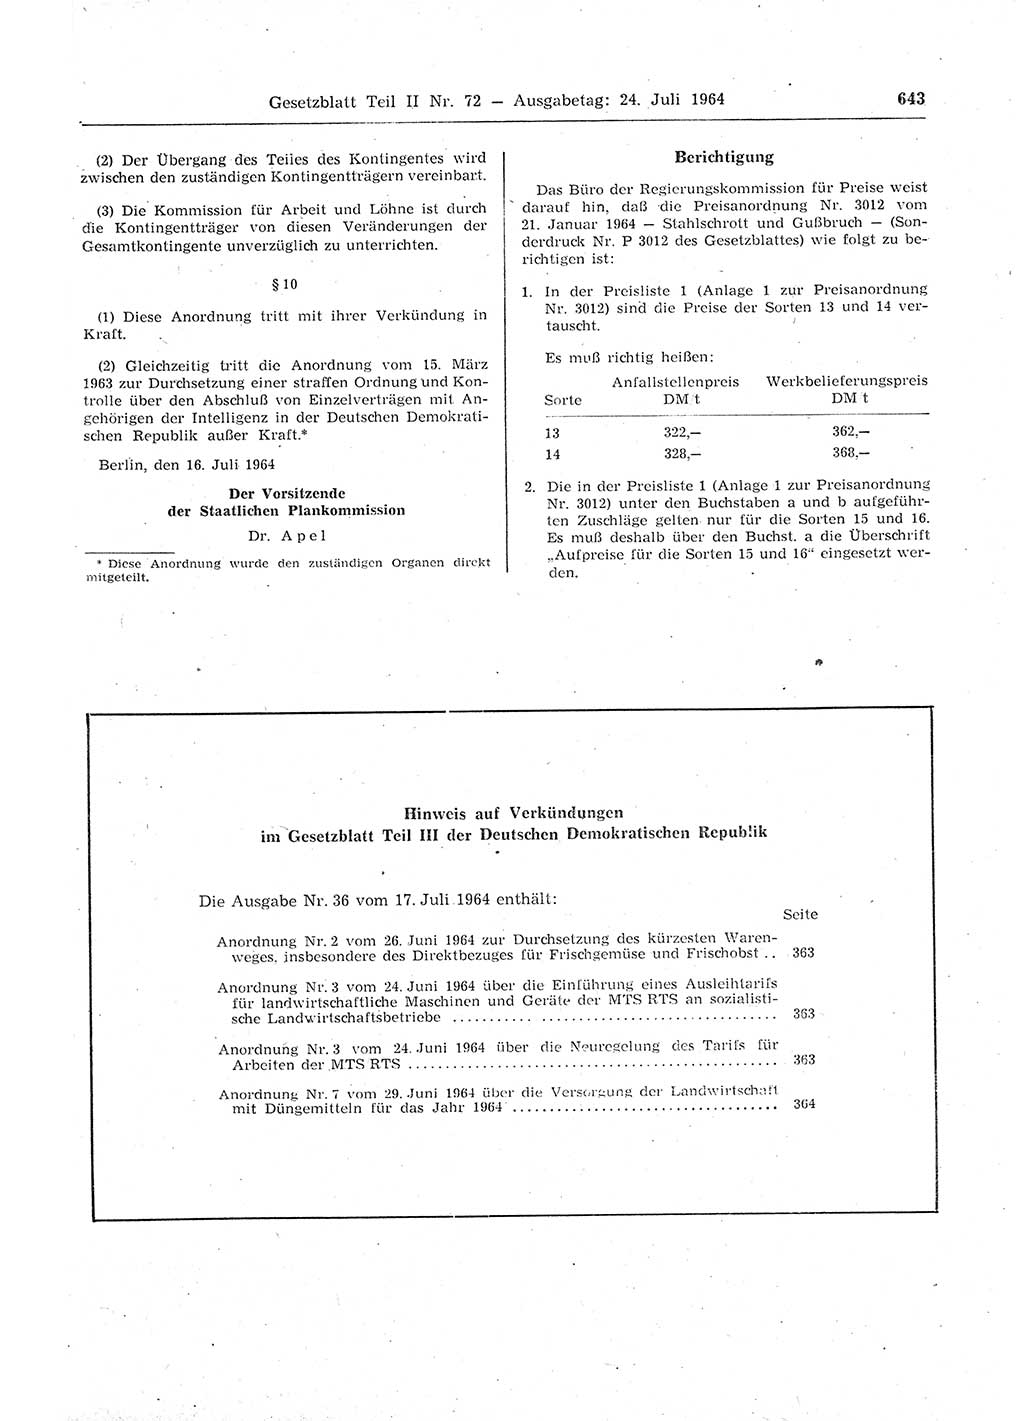 Gesetzblatt (GBl.) der Deutschen Demokratischen Republik (DDR) Teil ⅠⅠ 1964, Seite 643 (GBl. DDR ⅠⅠ 1964, S. 643)